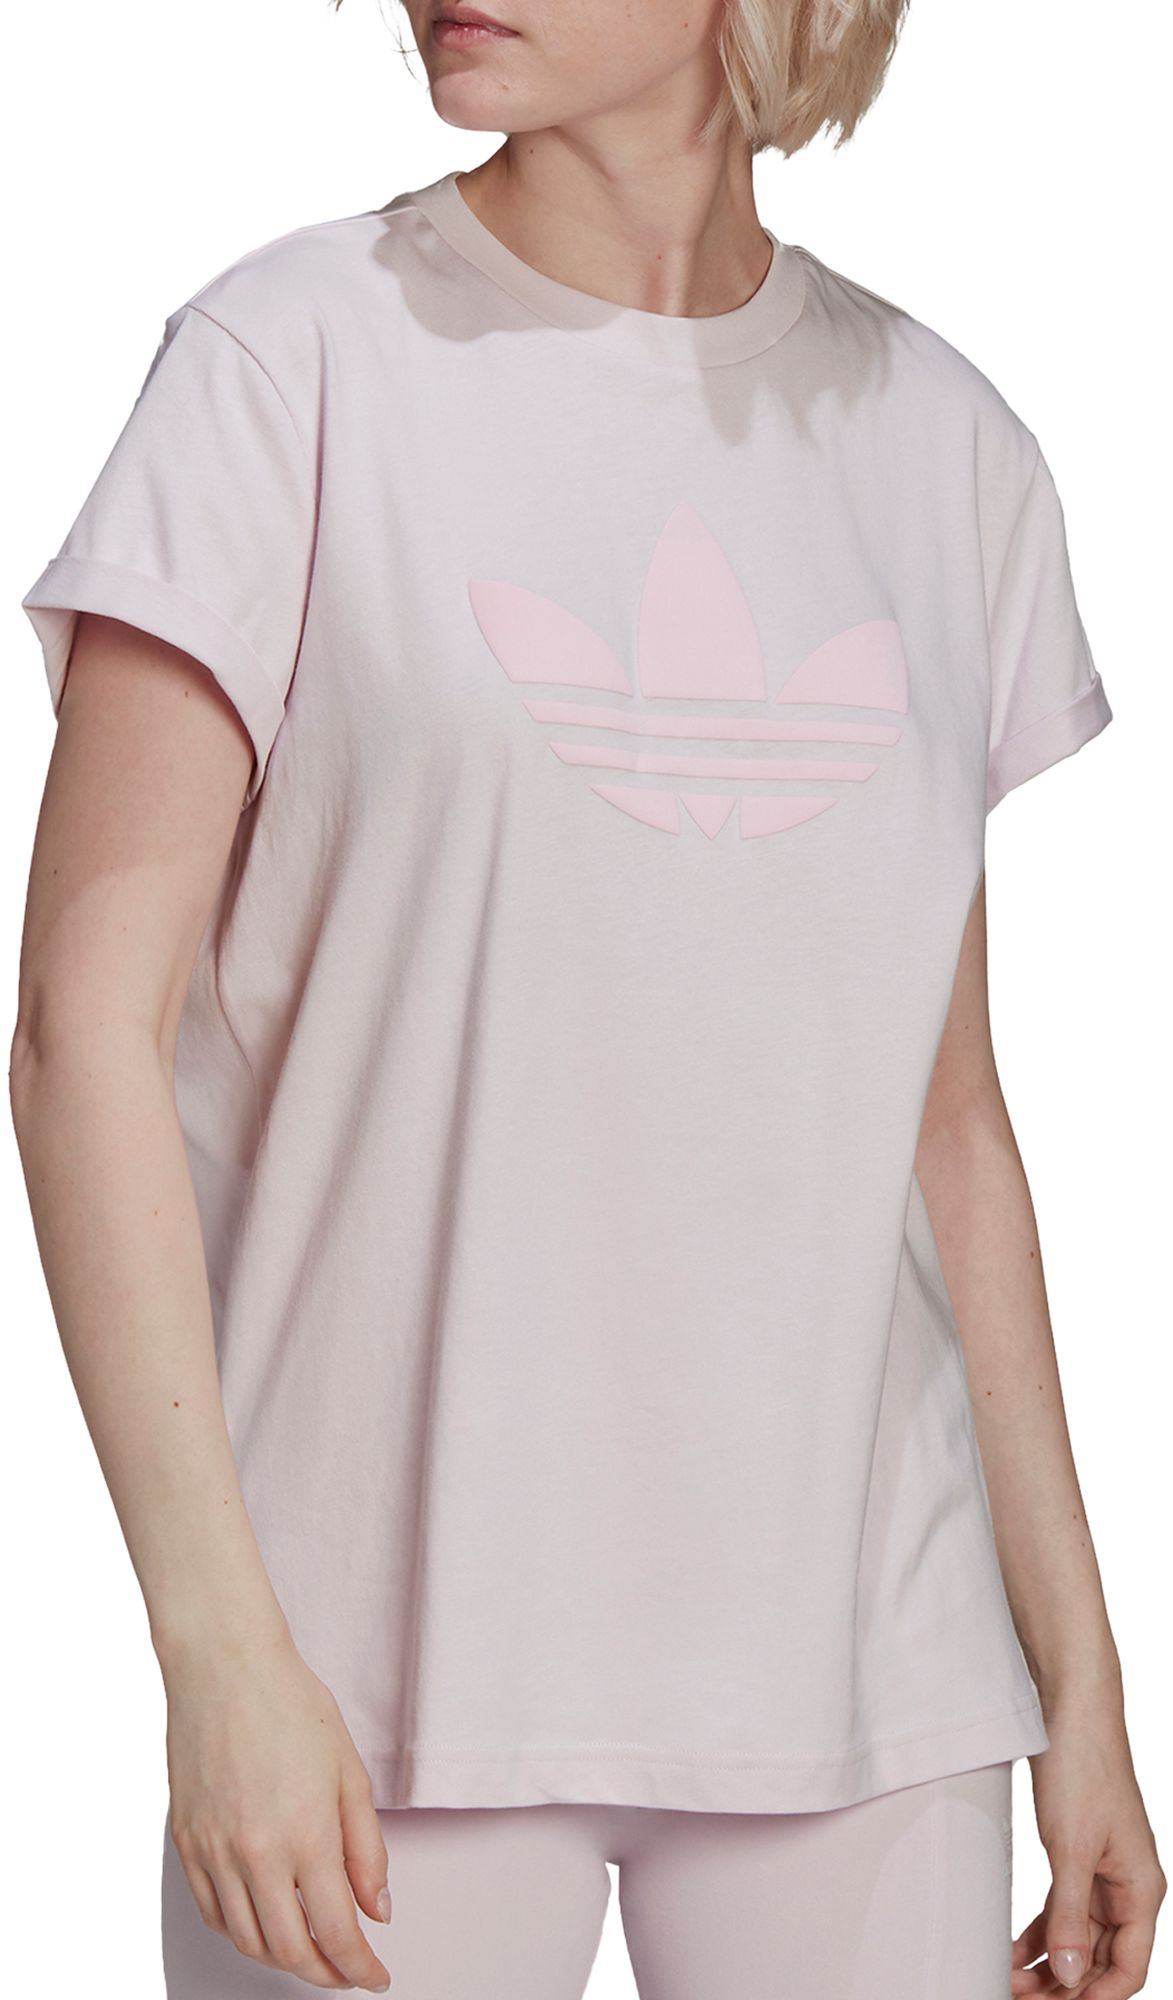 Opsommen Rationalisatie water Adidas / Originals Women's ISC 80s T-Shirt